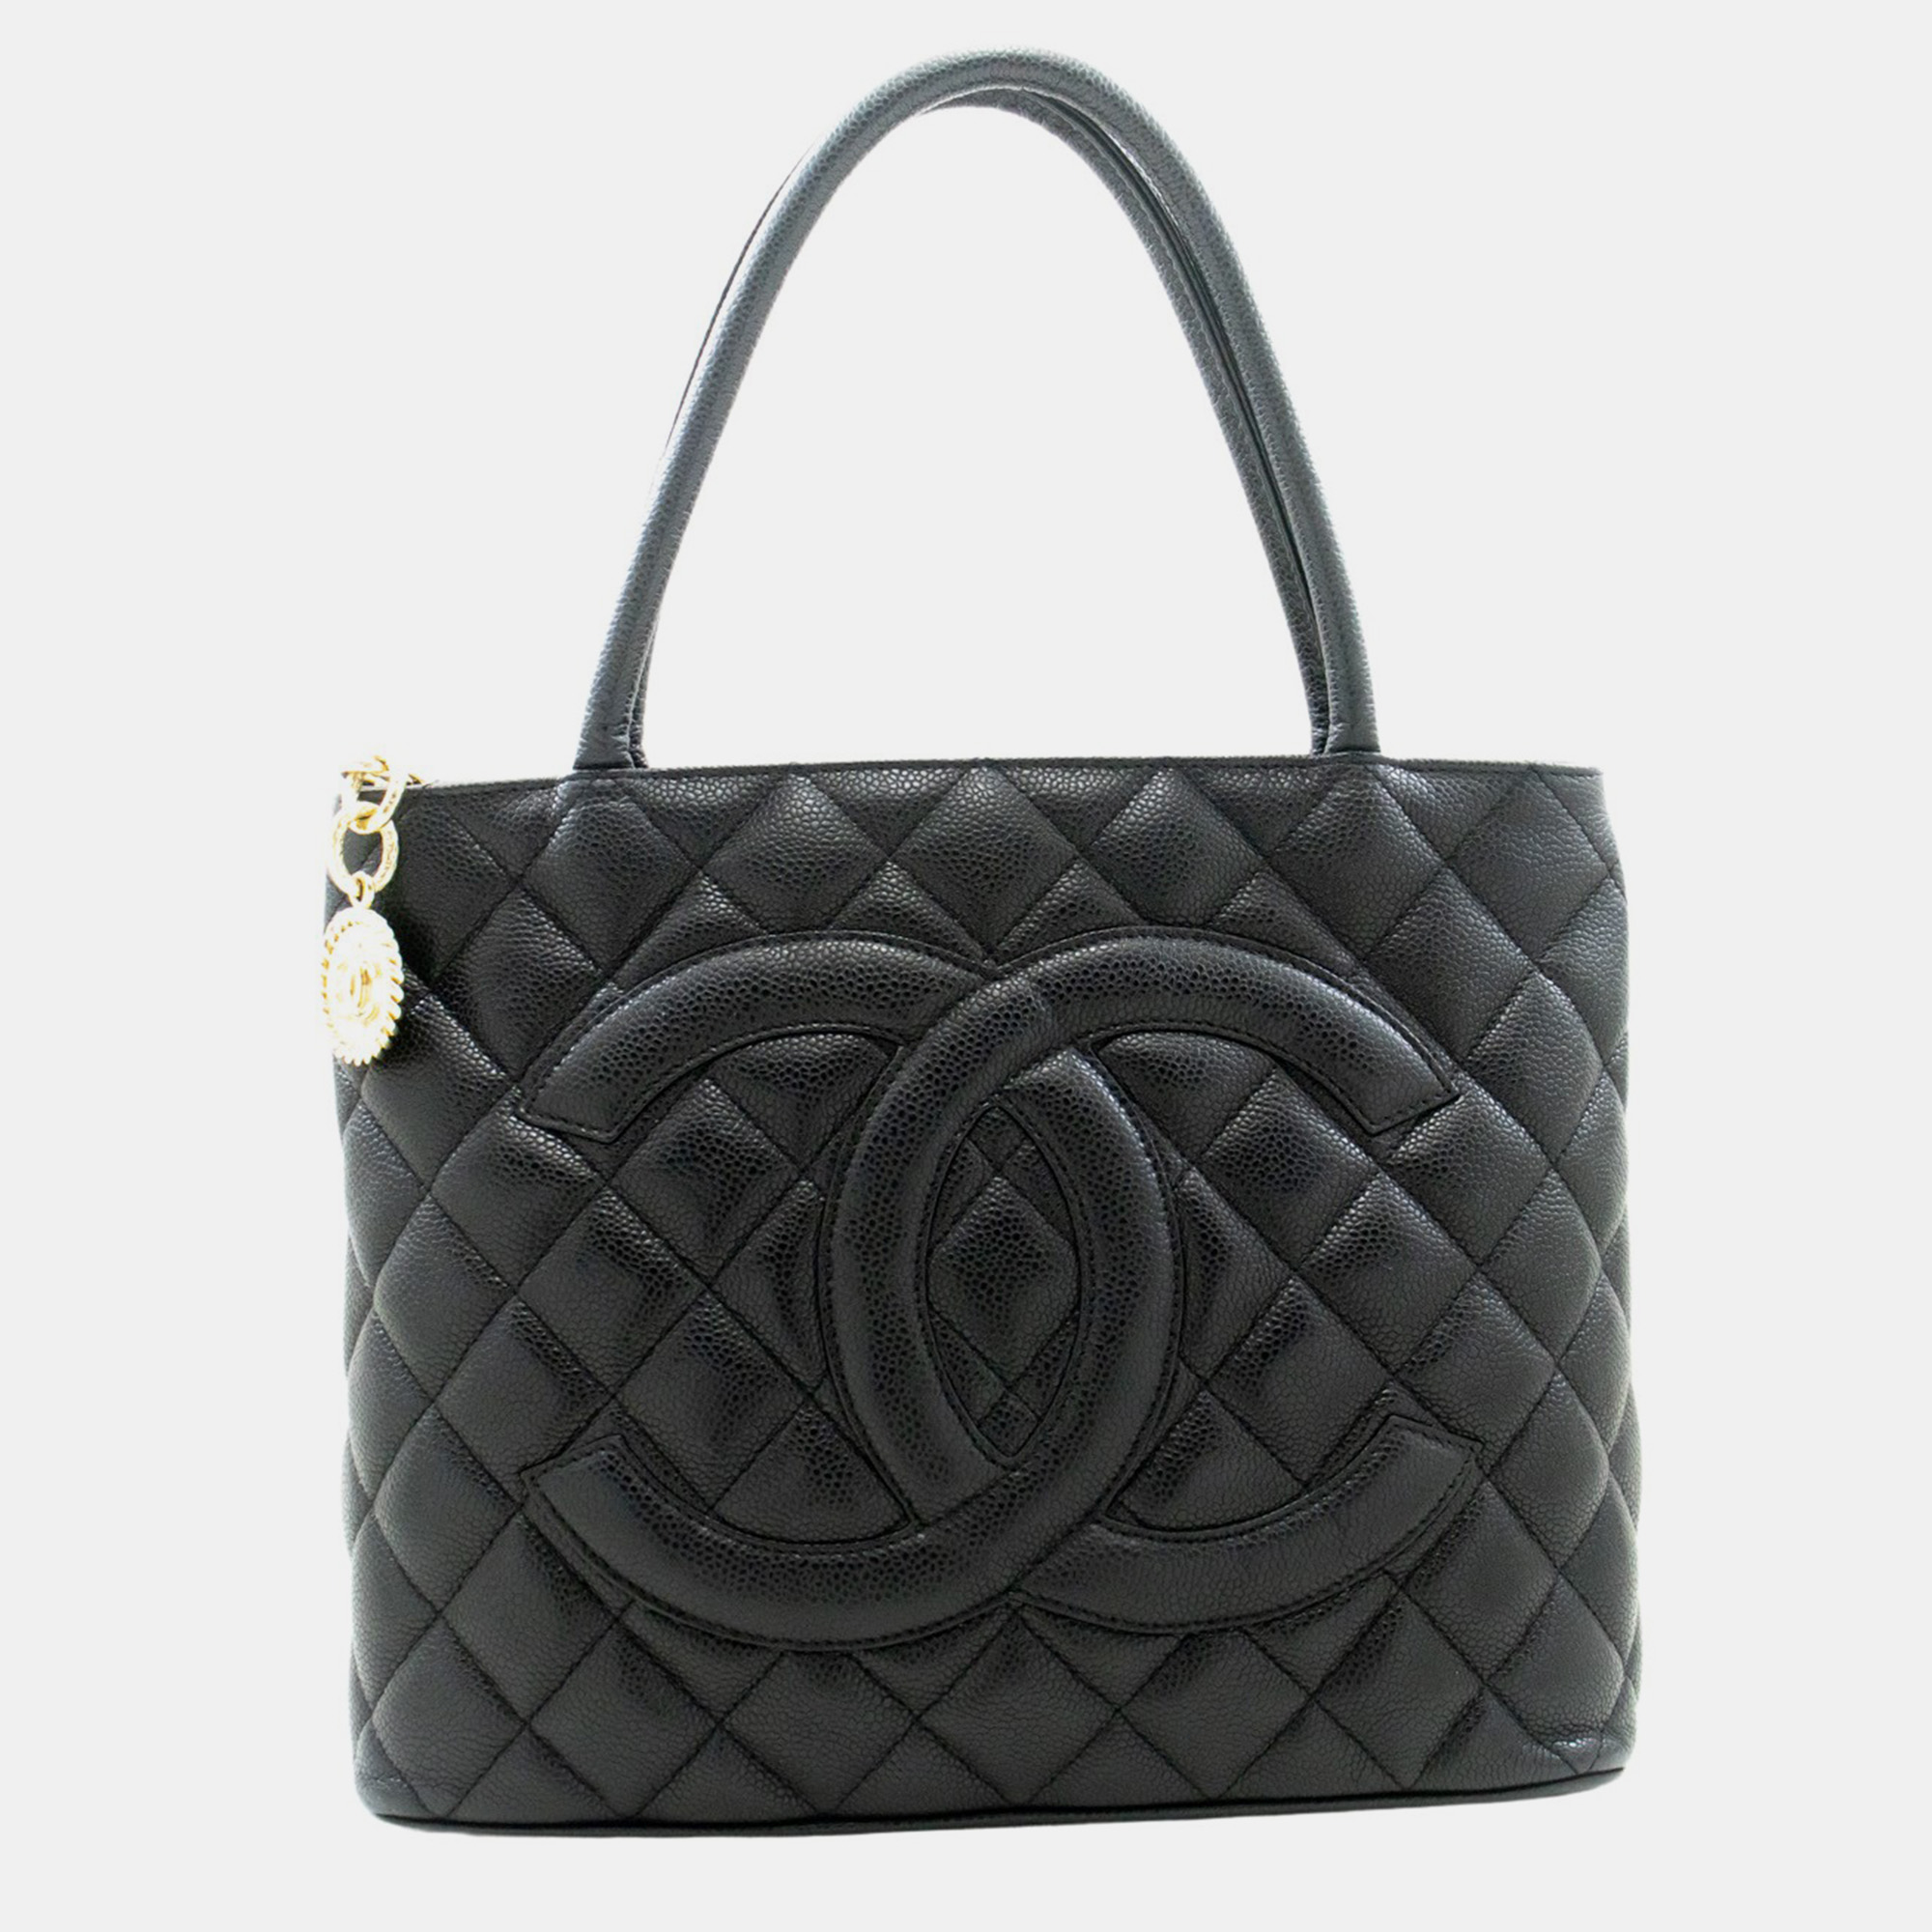 Chanel Black Leather Medallion Shoulder Bag